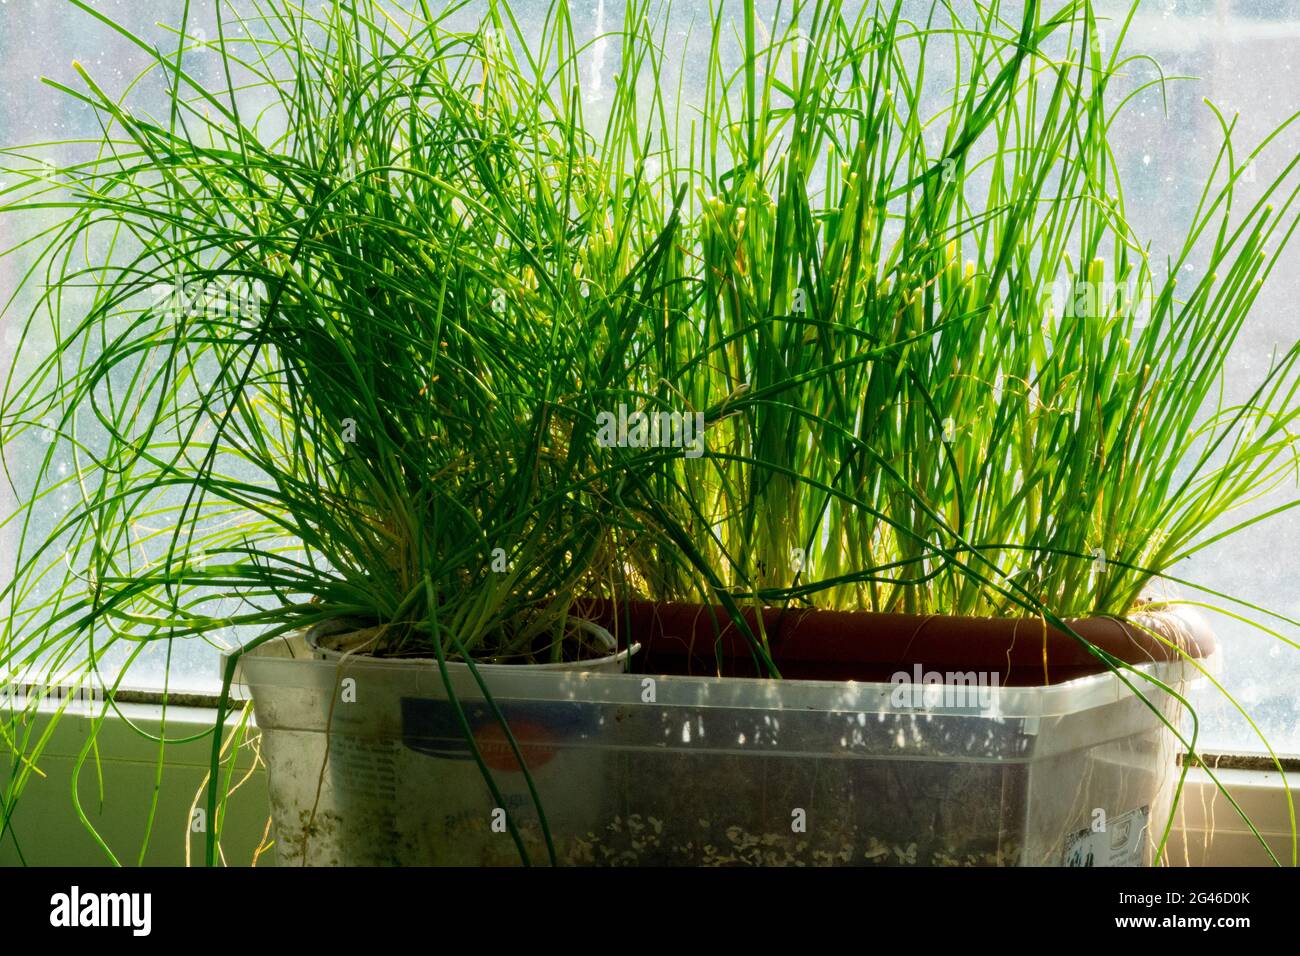 Allium schoenoprasum kulinarisches Kraut im Topf Windowsill Kräuter Topfpflanzen Kräuter wachsen Kräuter Stockfoto